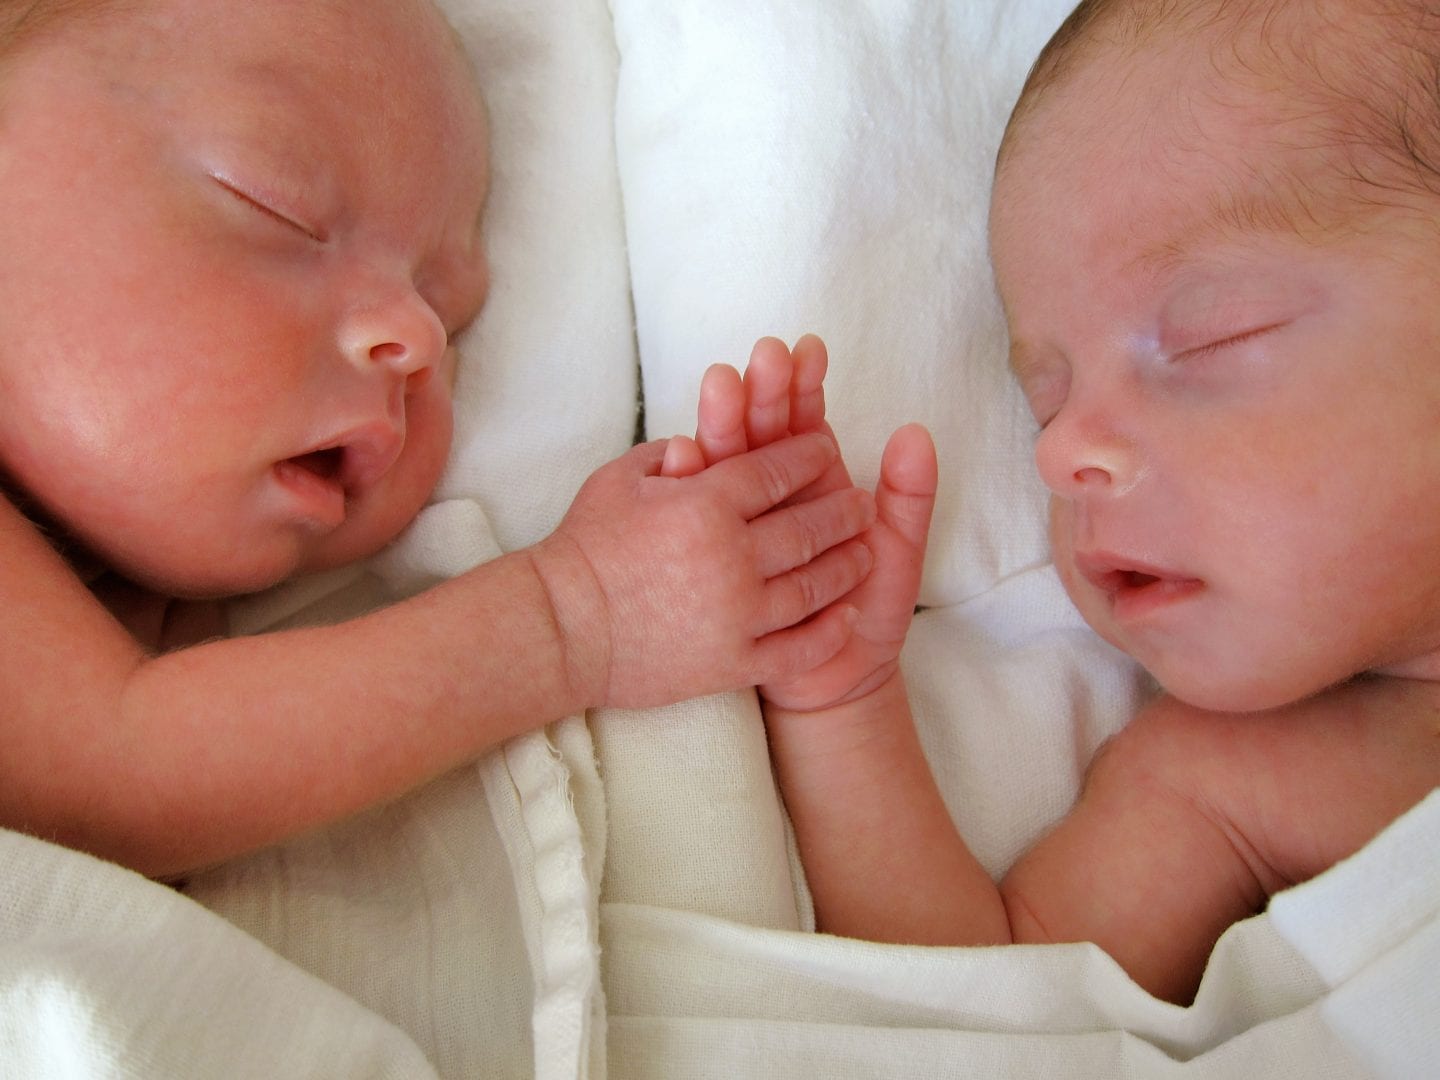 Mitos e verdades que rondam quem são irmãos gêmeos